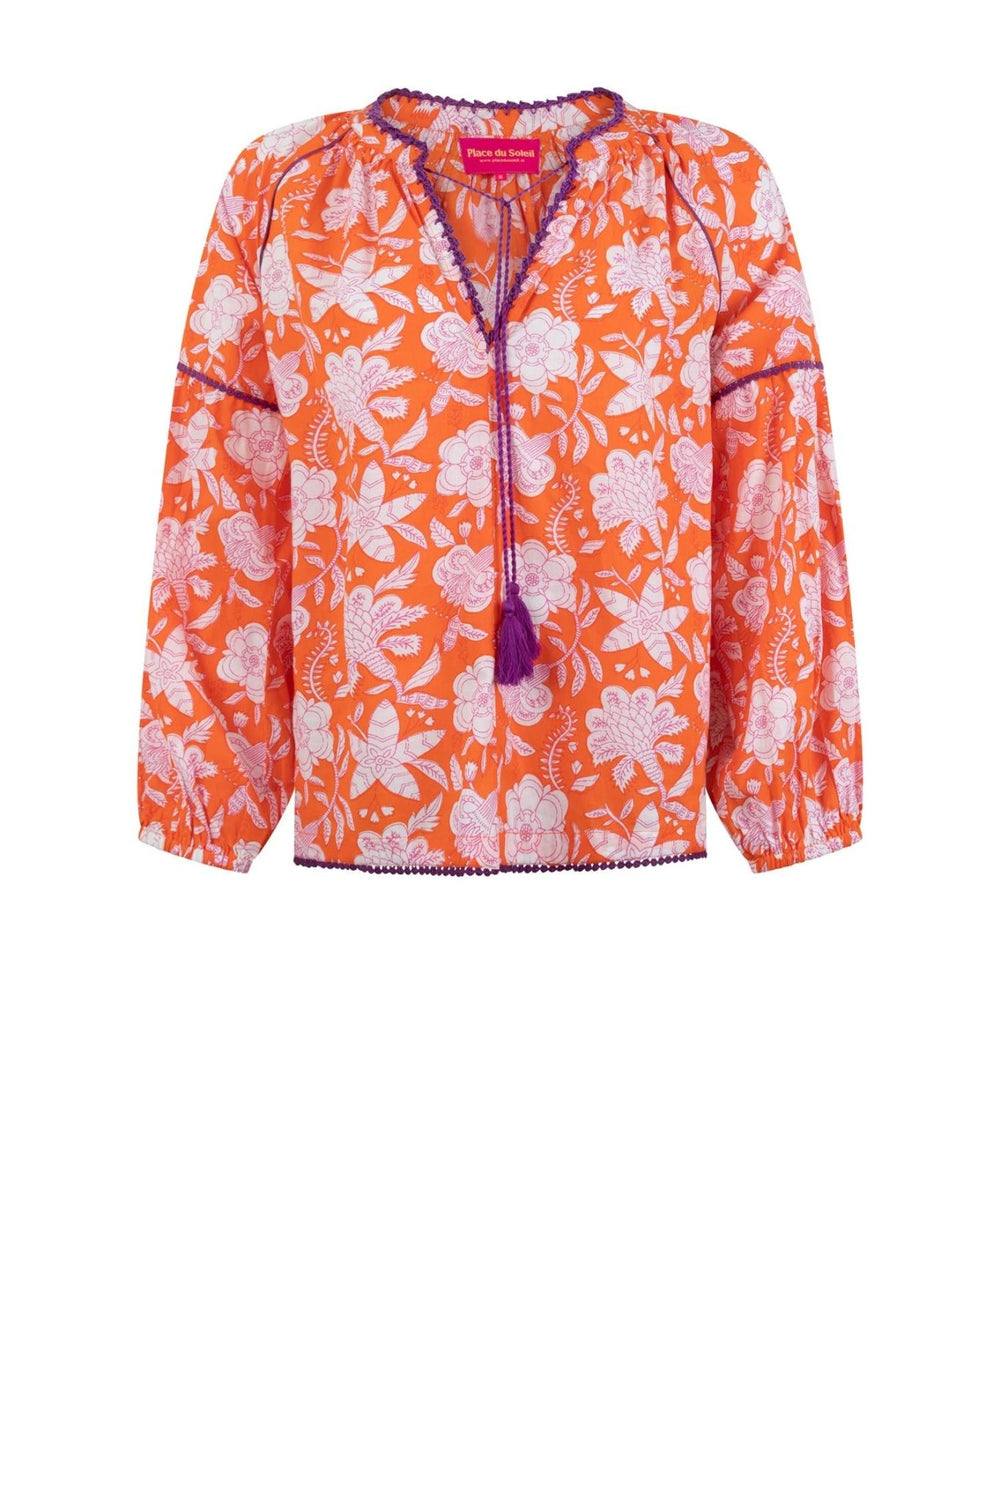 blouse orange & white flowers | Skjorter og bluser | Smuk - Dameklær på nett